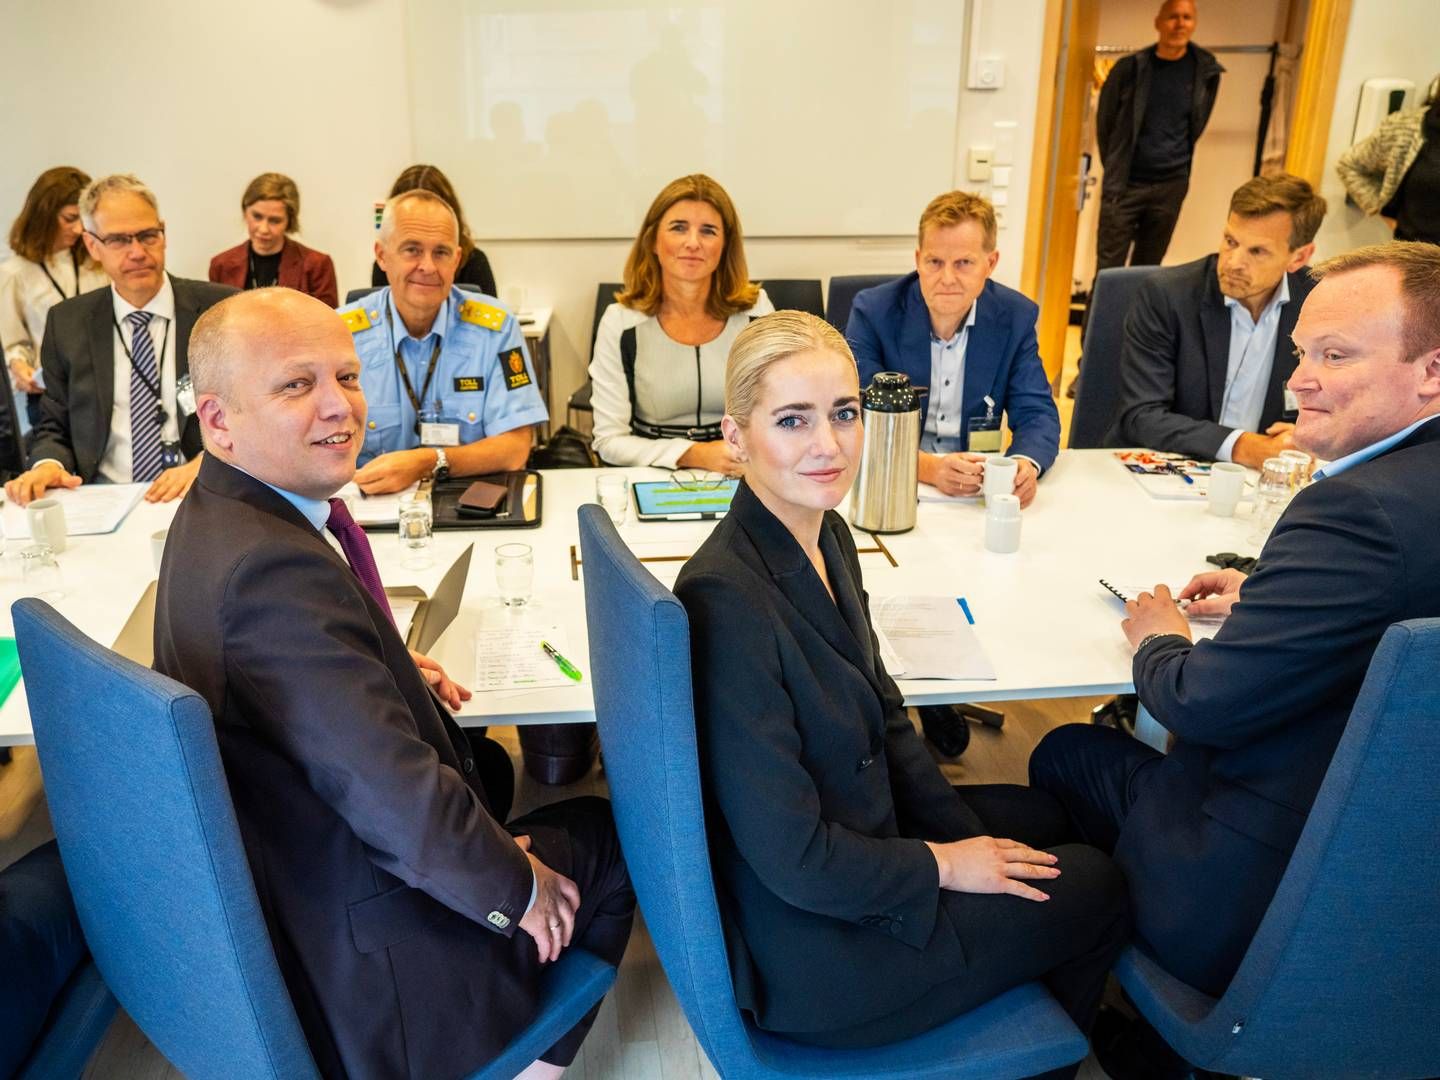 TILTAK: Justisminister Emilie Enger Mehl (Sp) og finansminister Trygve Slagsvold Vedum (Sp) møtte etatsledere for å diskutere tiltak mot økonomisk kriminalitet. | Foto: Ole Berg-Rusten / NTB